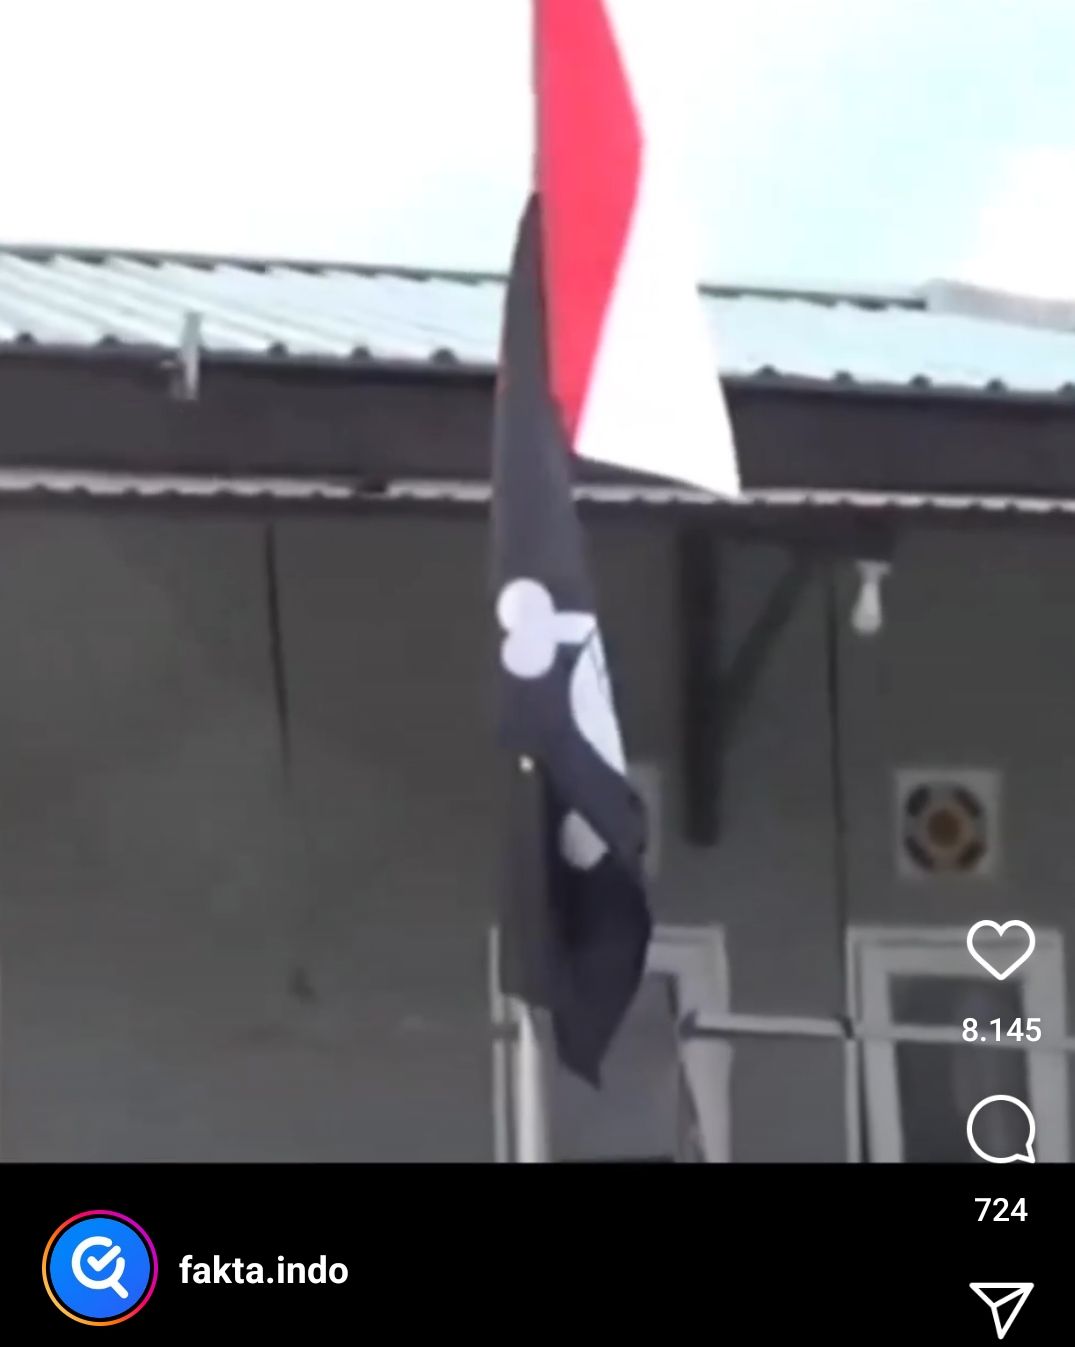 Penampakan tiang yang dipasang bendera One Piece di bawah sang saka Merah putih milik warga Samarinda.